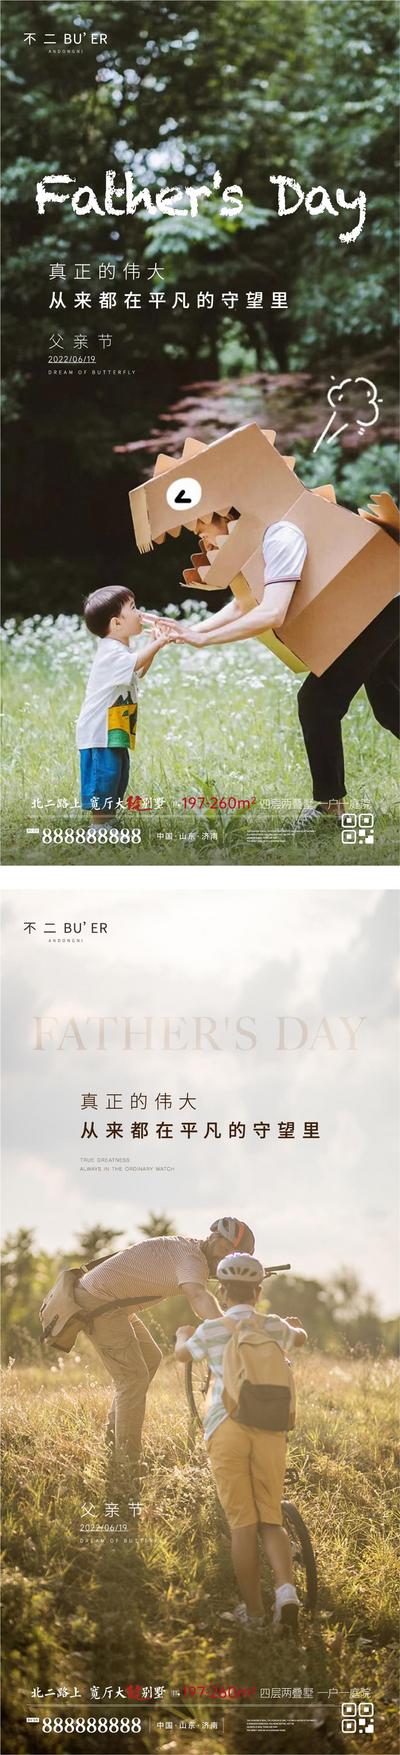 南门网 广告 海报 系列 父亲节 公历节日 儿童 陪伴 温馨 恐龙